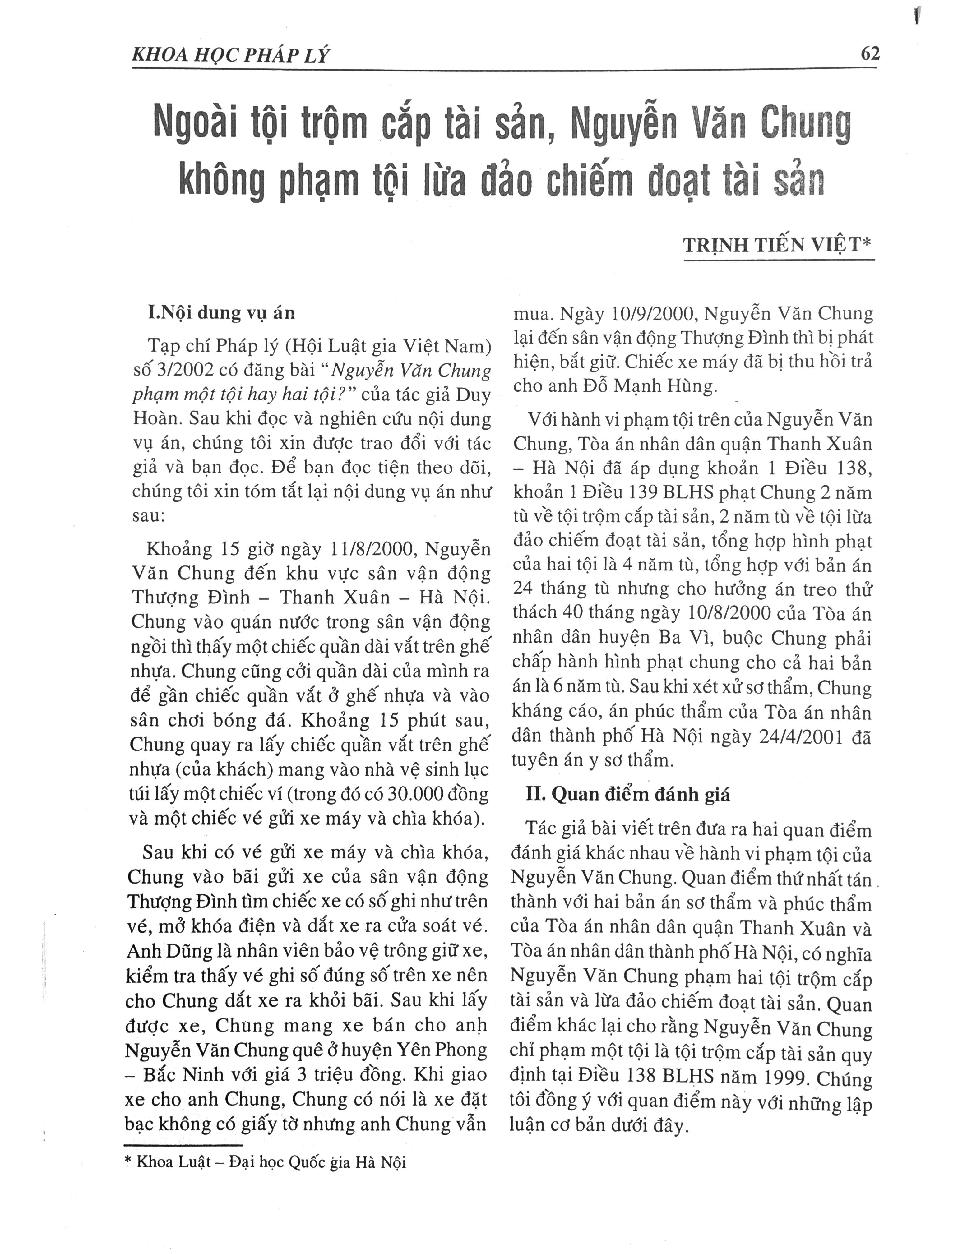 Ngoài tội trộm cắp tài sản, Nguyễn Văn Chung không phạm tội chiếm đoạt tài sản